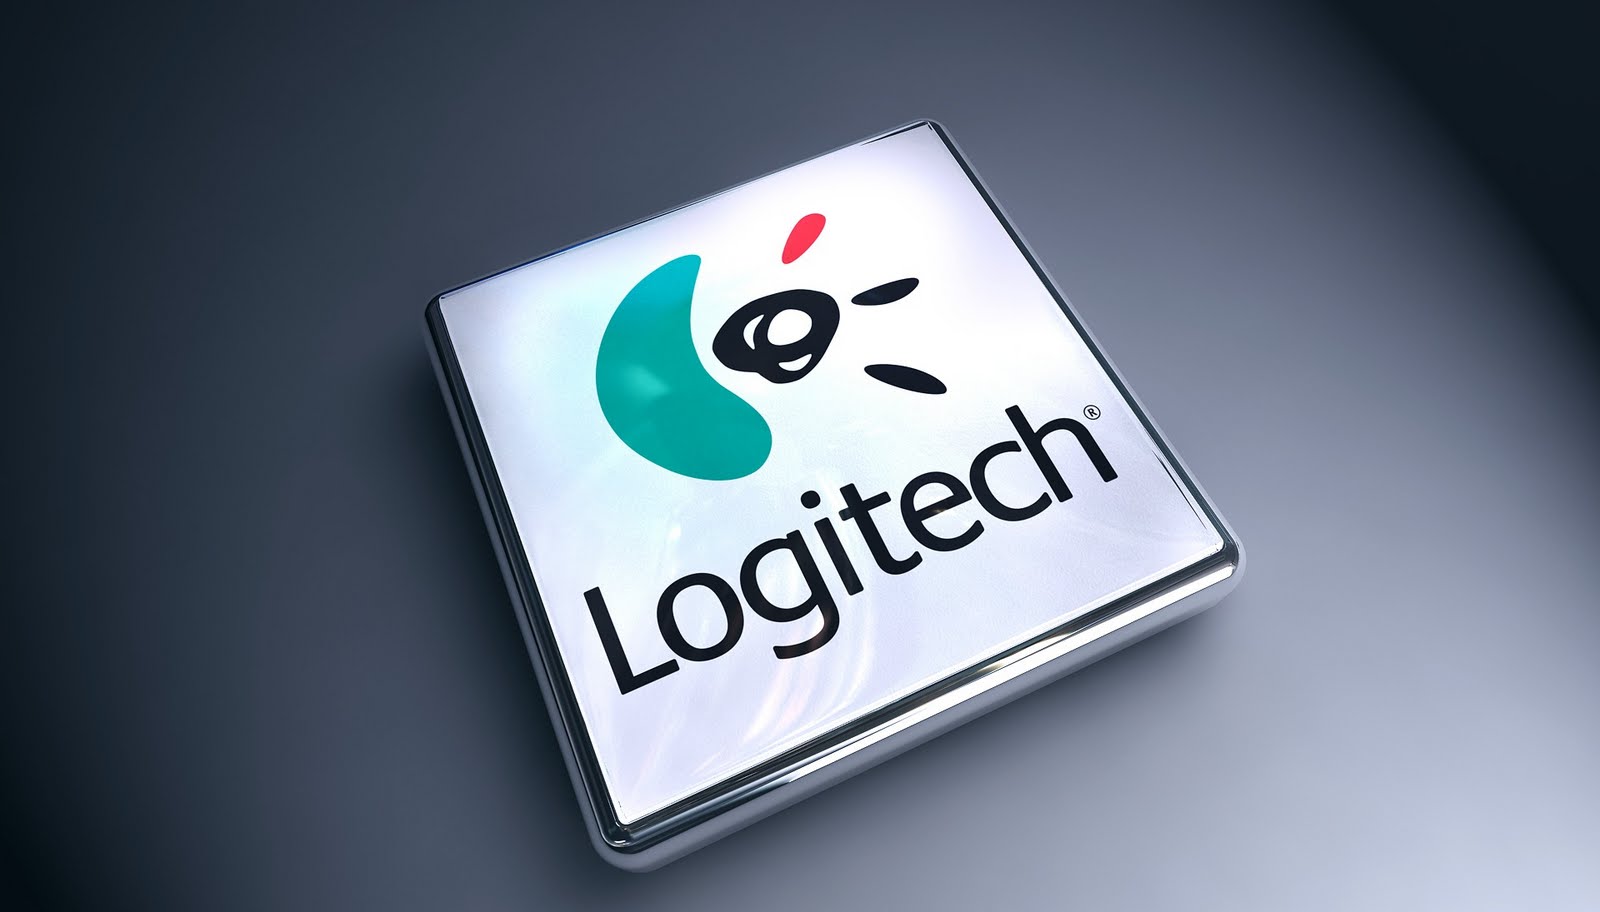 Wallpaper Logitech Logo Hd Computer Wallpapers